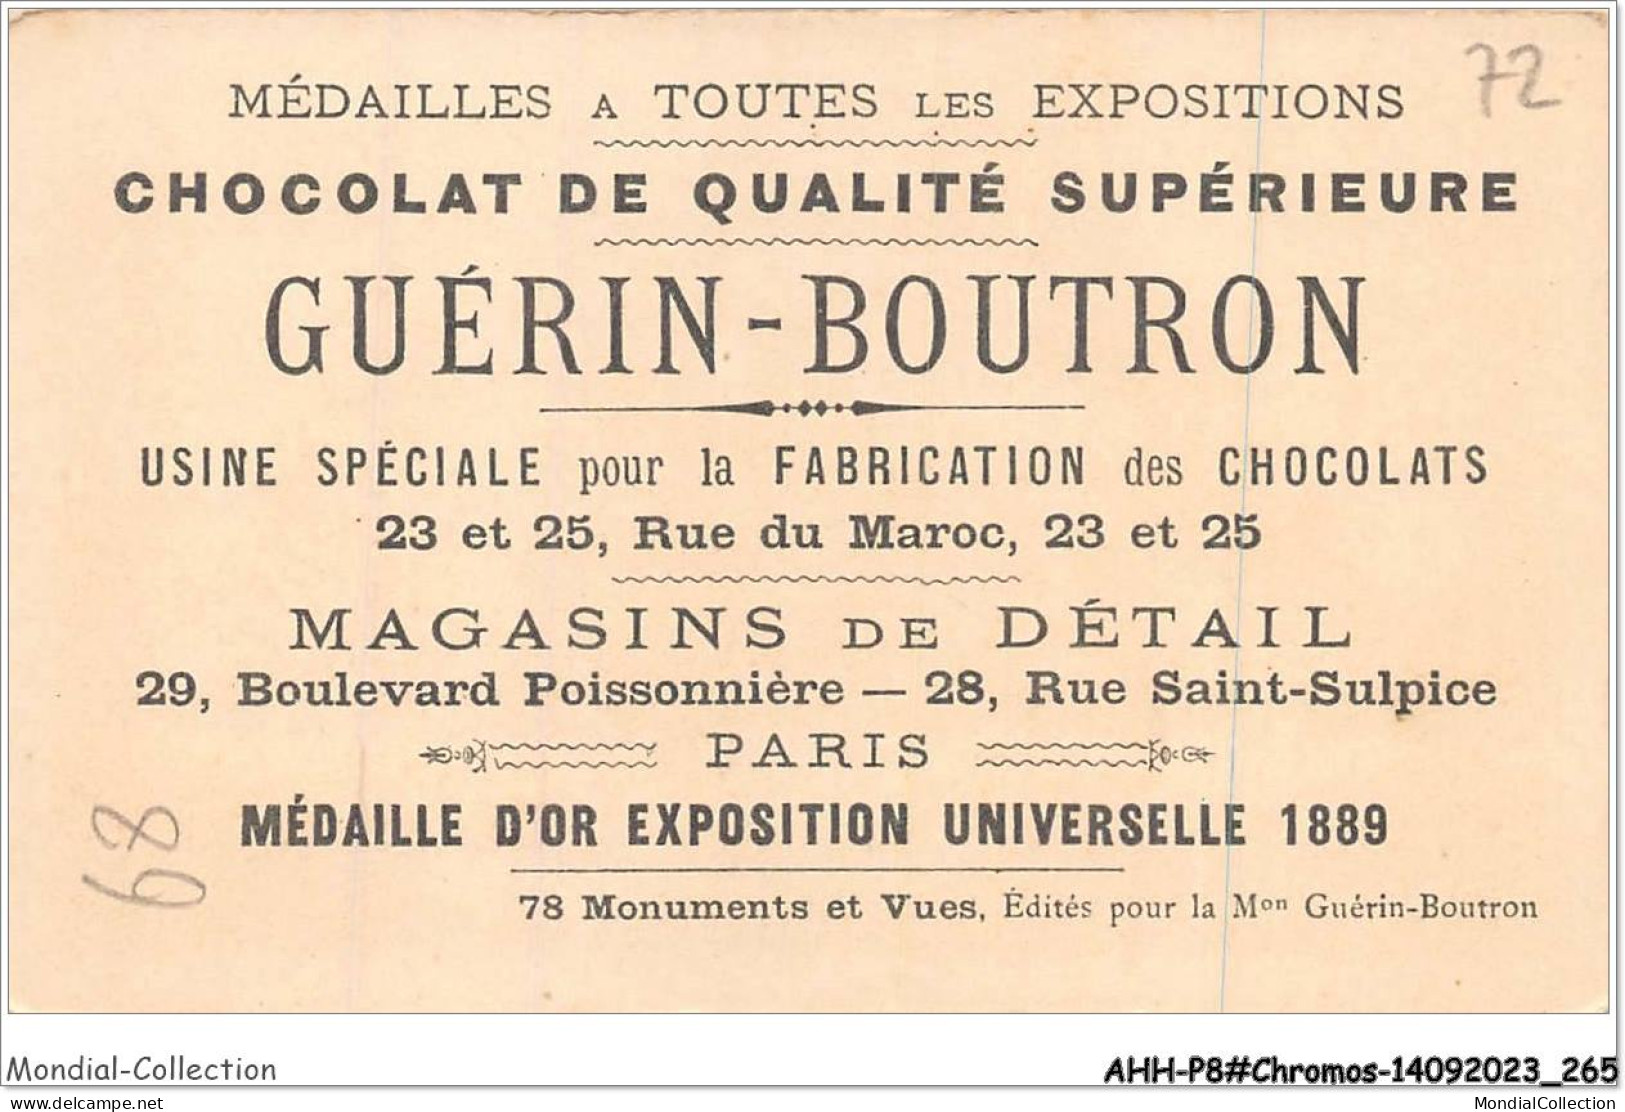 AHHP8-1533 - CHROMOS - CHOCOLAT-GUERIN-BOUTRON - PARIS - Sections Etrangeres - Village Suisse - 10,5 X 7cm - Guérin-Boutron